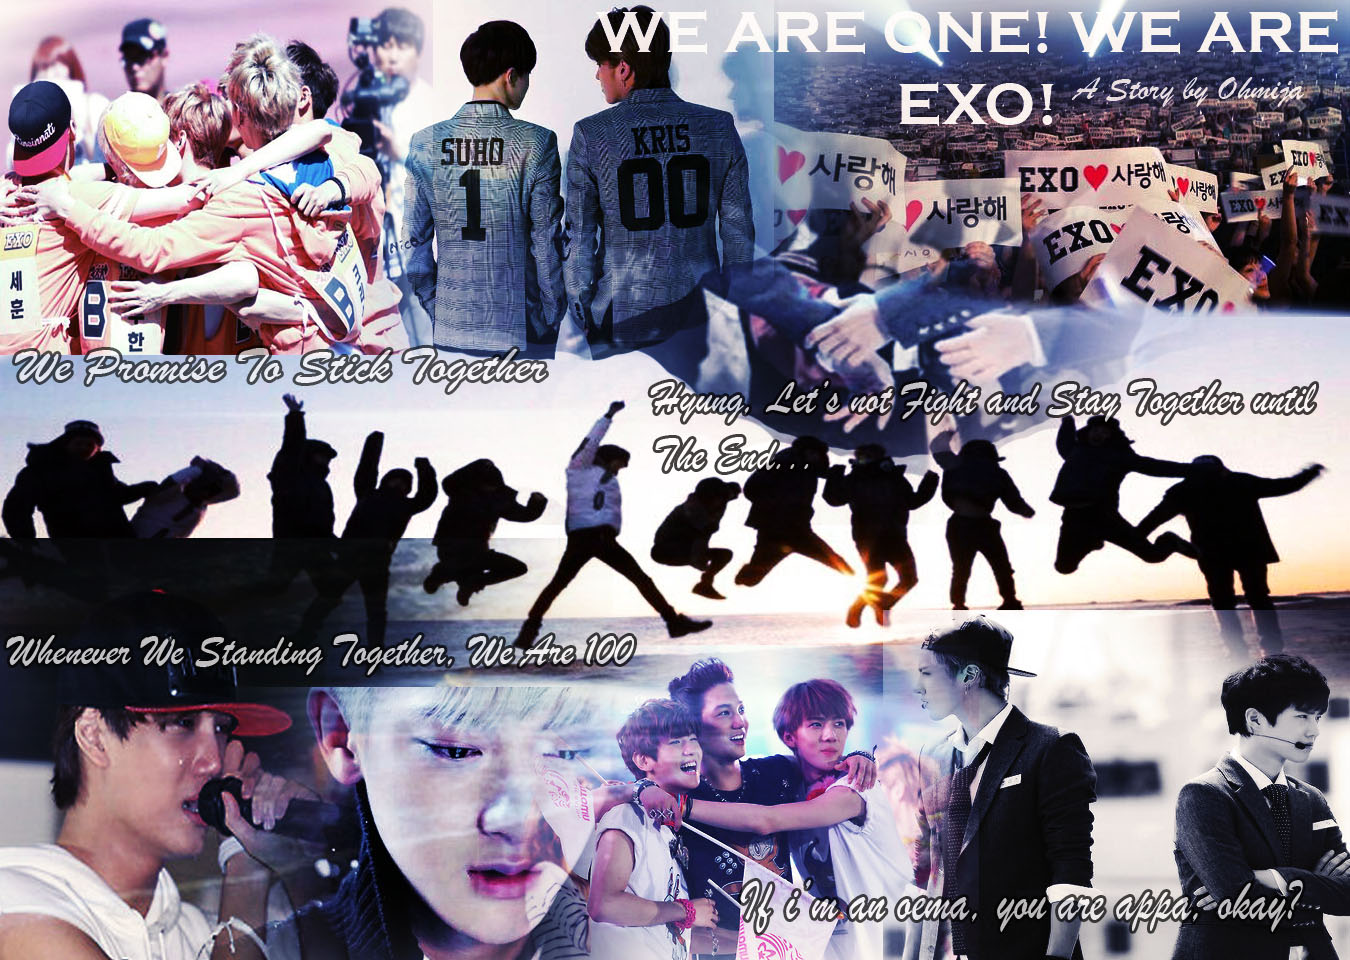 We Are One We Are EXO Chapt 3 Koreadansaya